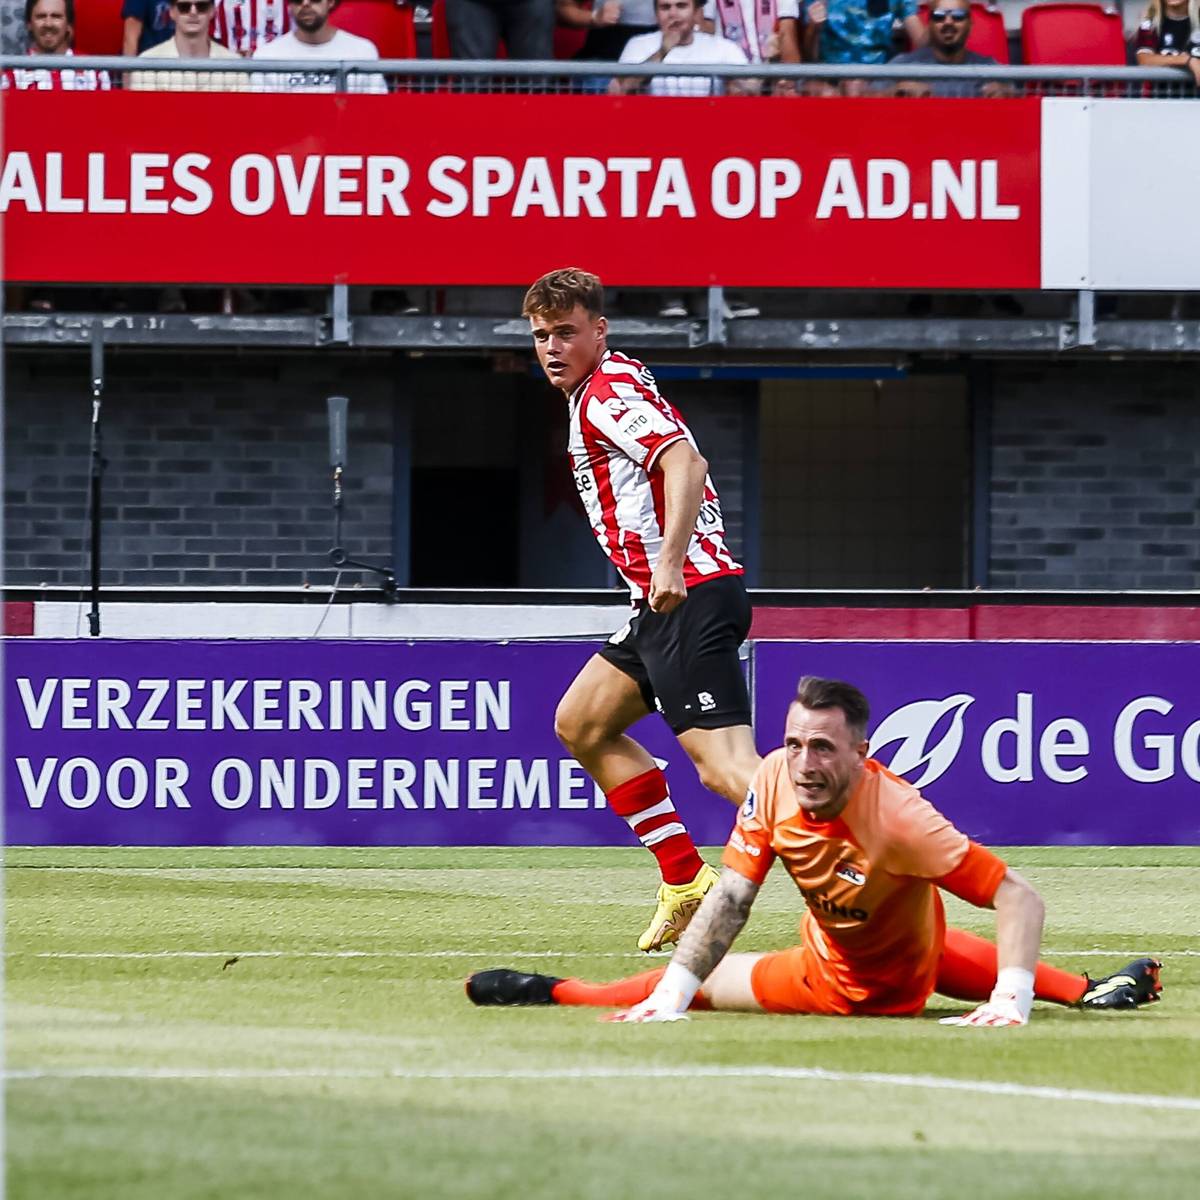 Blitzstart in den Niederlanden: Vito van Crooij von Sparta Rotterdam erzielt gegen AZ Alkmaar das schnellste Tor in der Geschichte der Eredivisie.